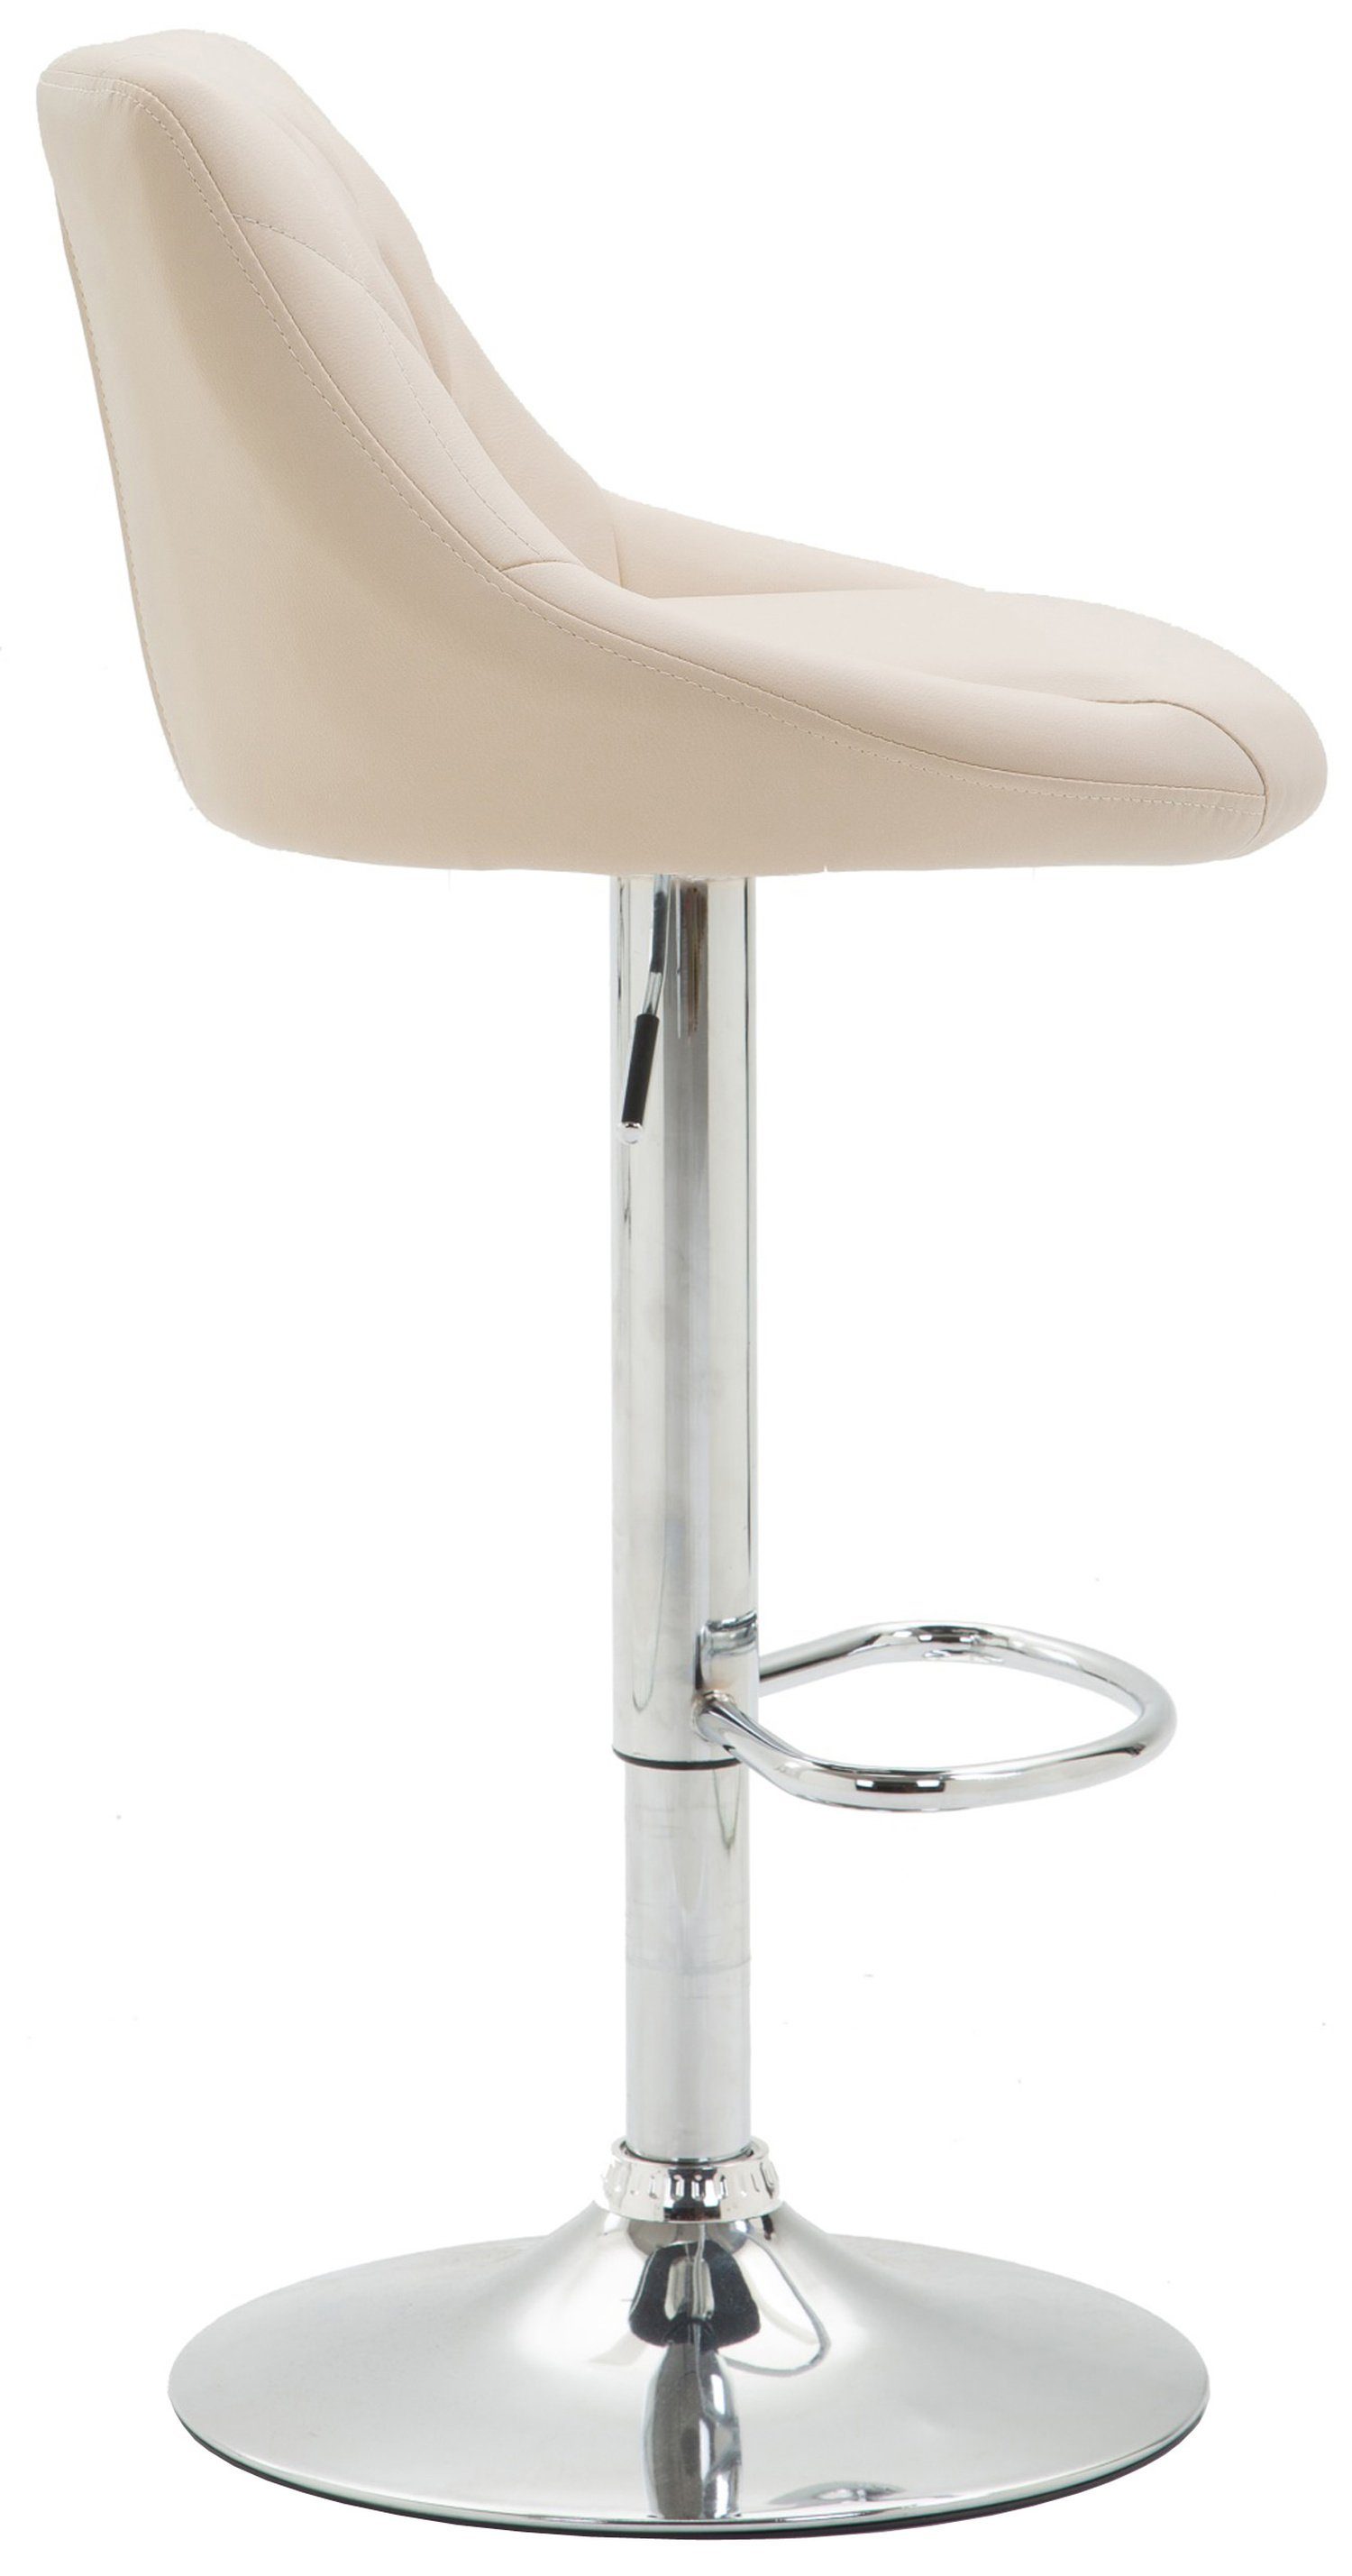 Creme Fußstütze - - für Theke Stahl Sitzfläche: Küche mit TPFLiving 360° & Rückenlehne - und - Hocker Kunstleder höhenverstellbar Lazius, drehbar verchromter Barstuhl Barhocker Tresenhocker -